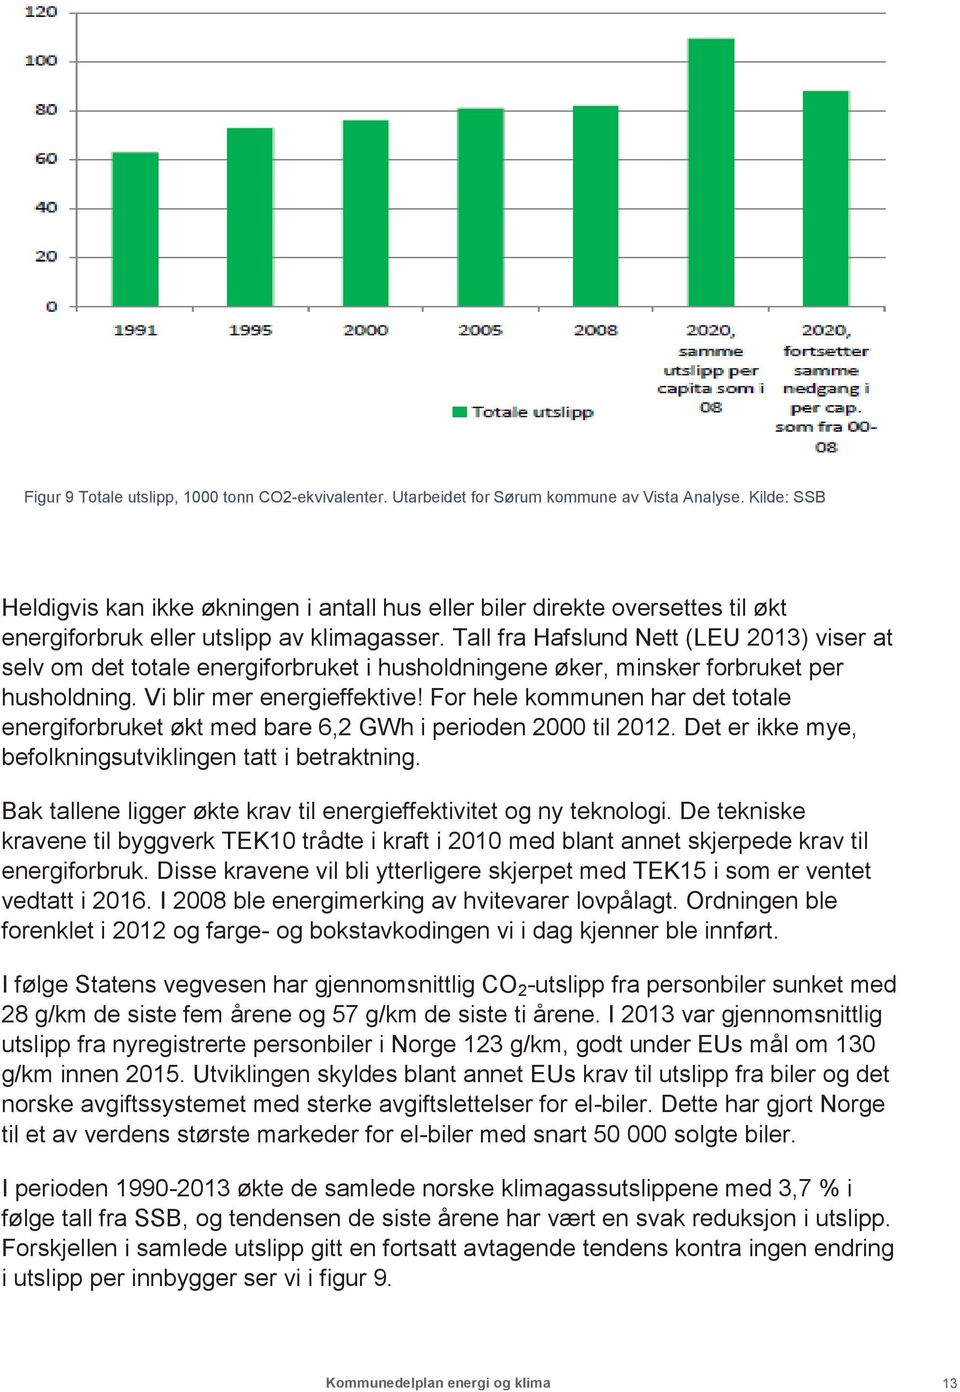 Tall fra Hafslund Nett (LEU 2013) viser at selv om det totale energiforbruket i husholdningene øker, minsker forbruket per husholdning. Vi blir mer energieffektive!